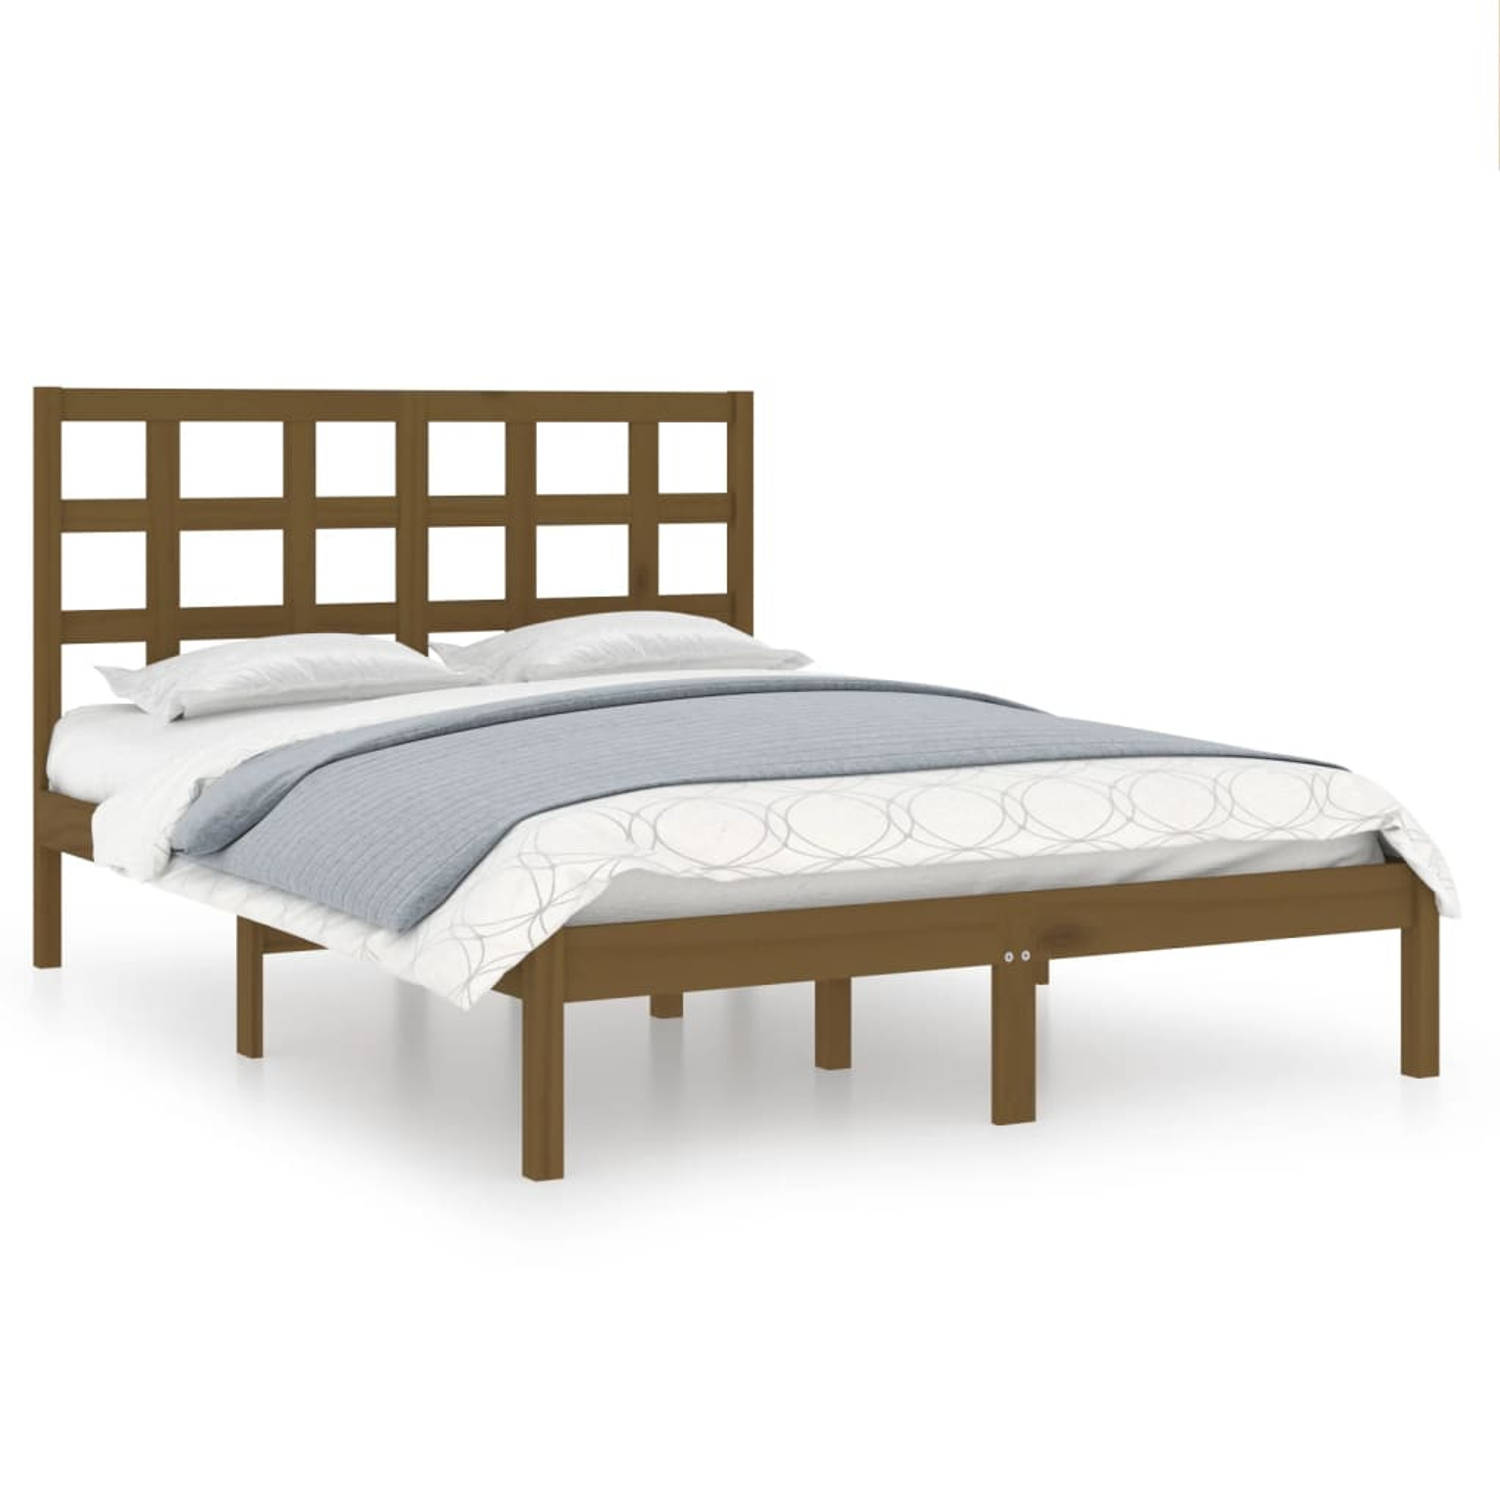 The Living Store Bedframe massief hout honingbruin 140x190 cm - Bedframe - Bedframes - Tweepersoonsbed - Bed - Bedombouw - Dubbel Bed - Frame - Bed Frame - Ledikant - Houten Bedfra